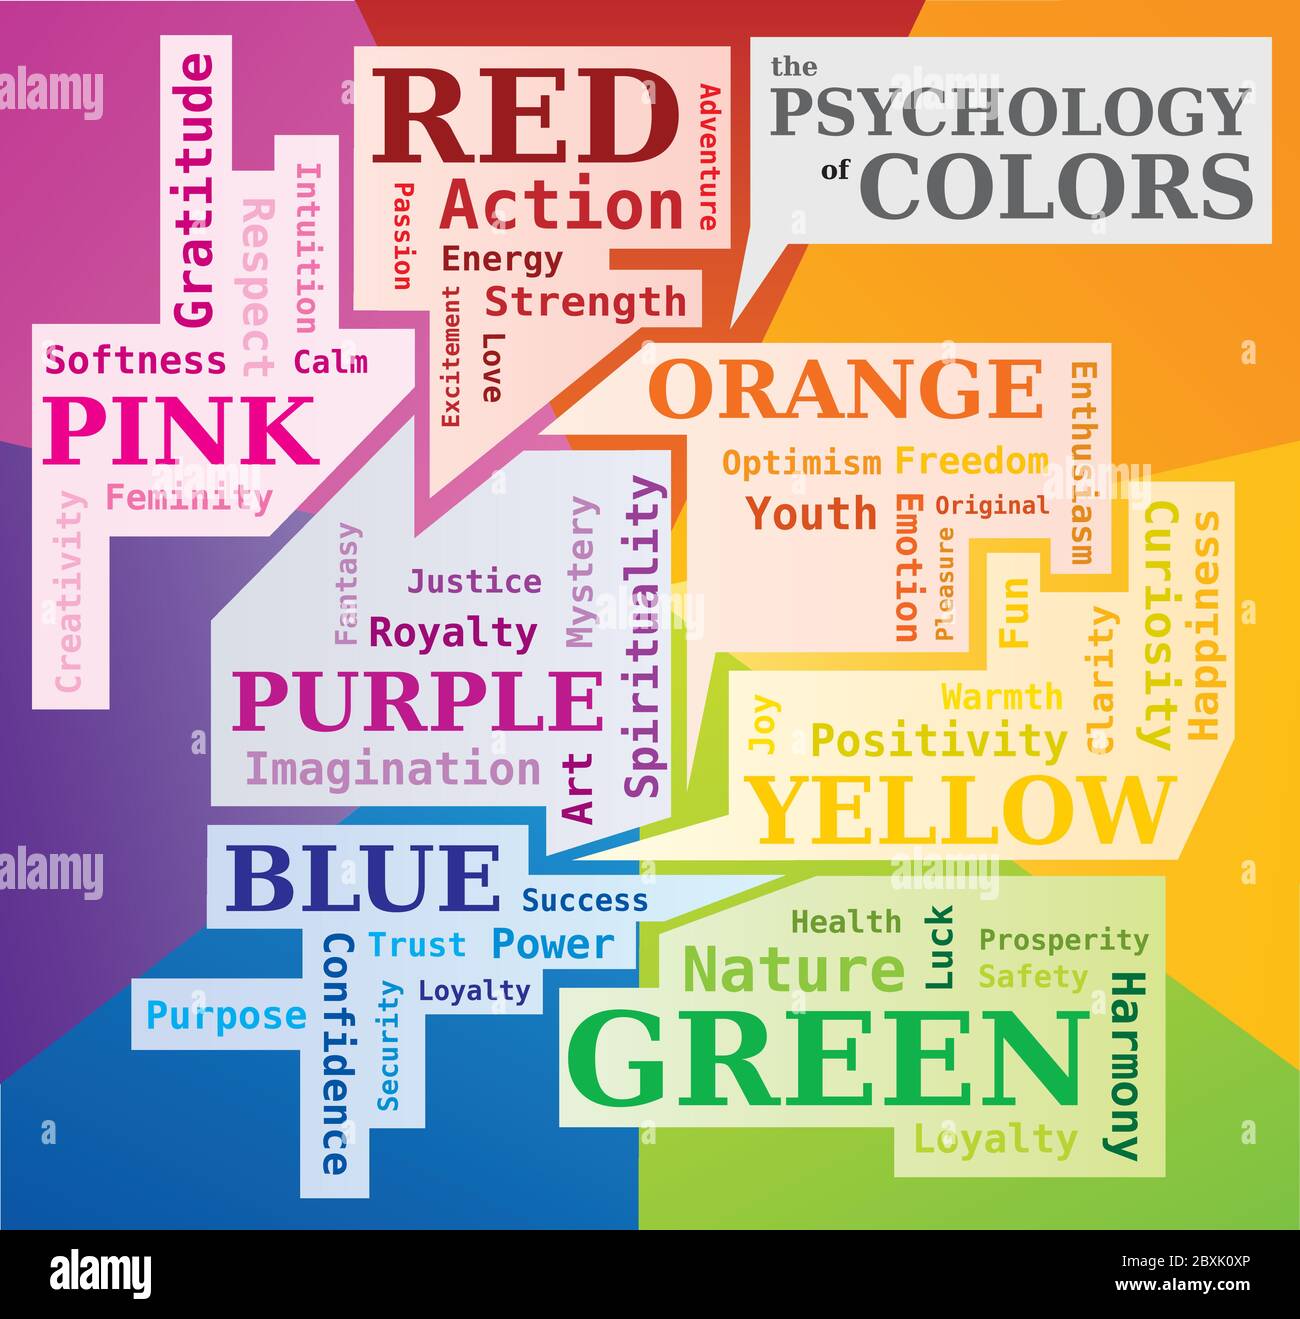 Die Psychologie der Farben Wortwolke zeigt die Bedeutung der Farben - Englisch Stock Vektor